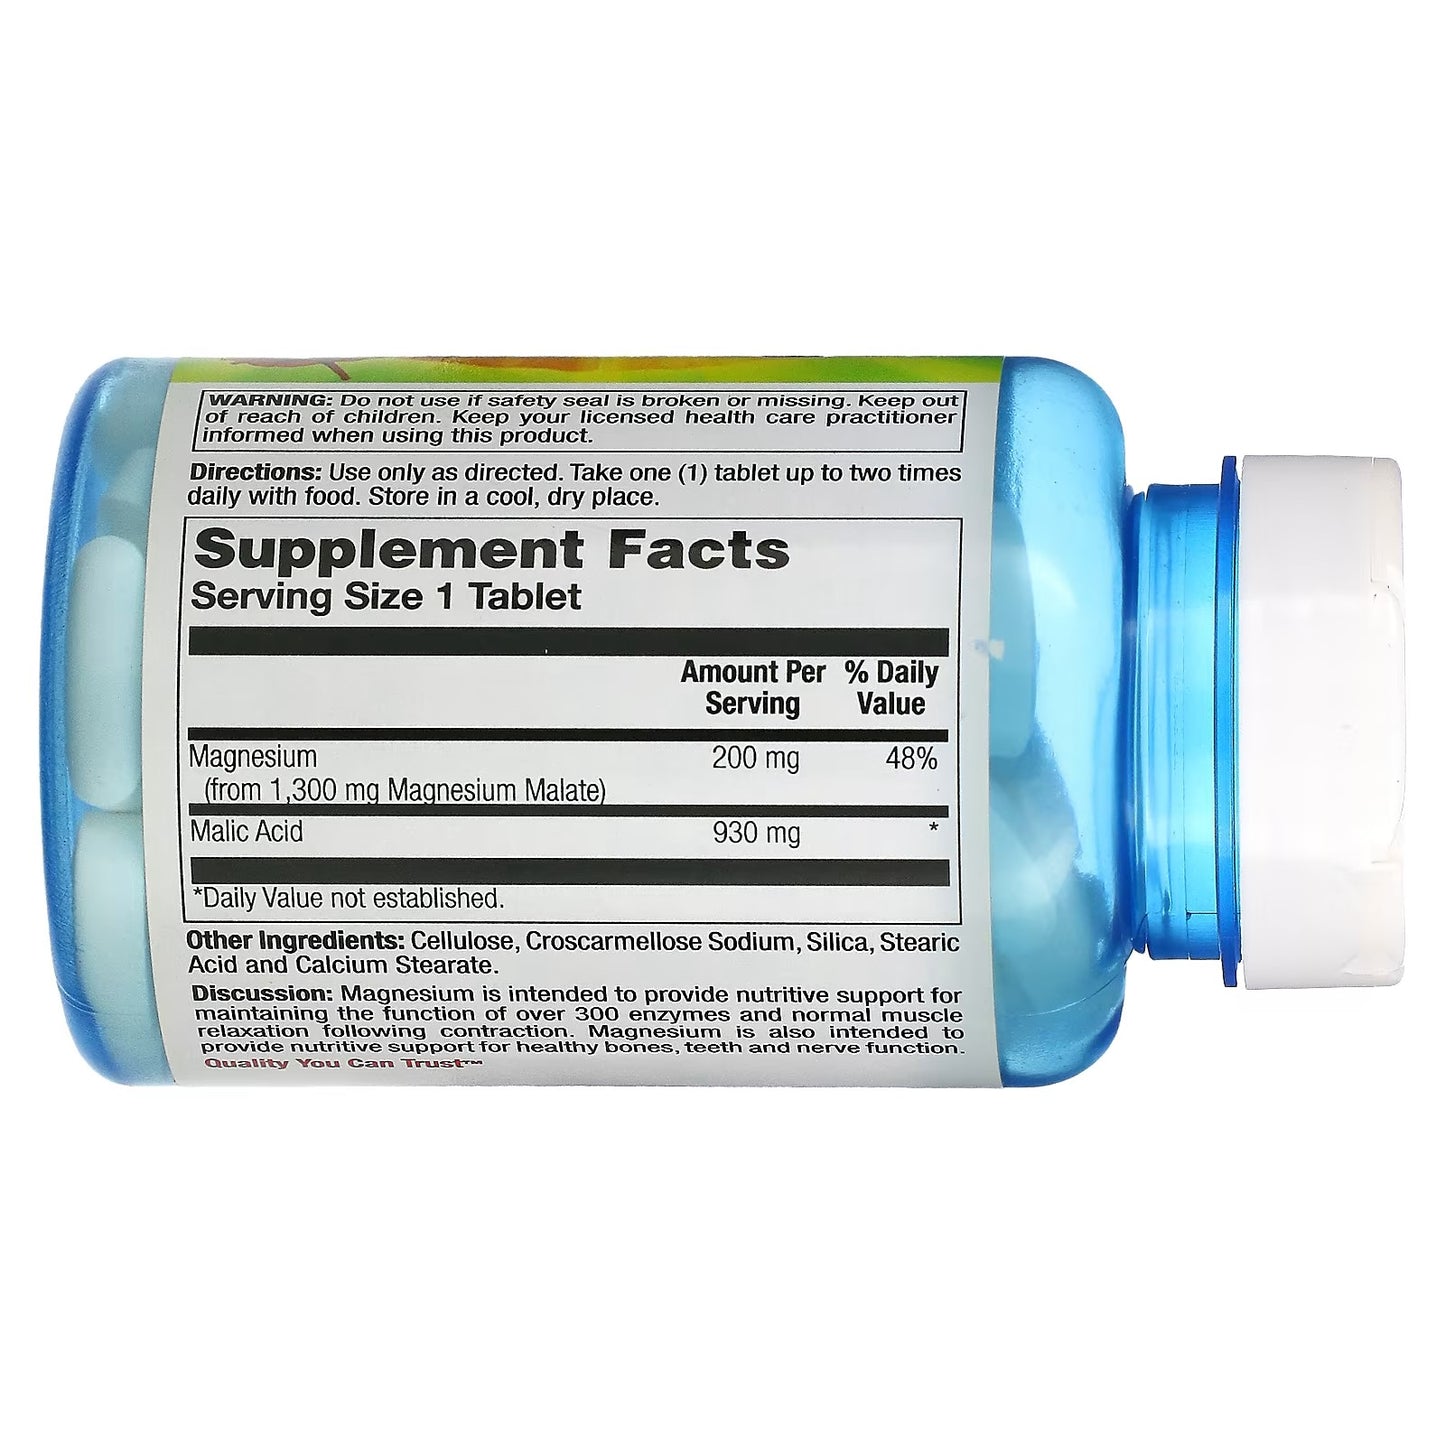 Magnesium Malate, 1,300 mg sa Jabučnom kiselinom, 100 tab.-Nature's Life USA